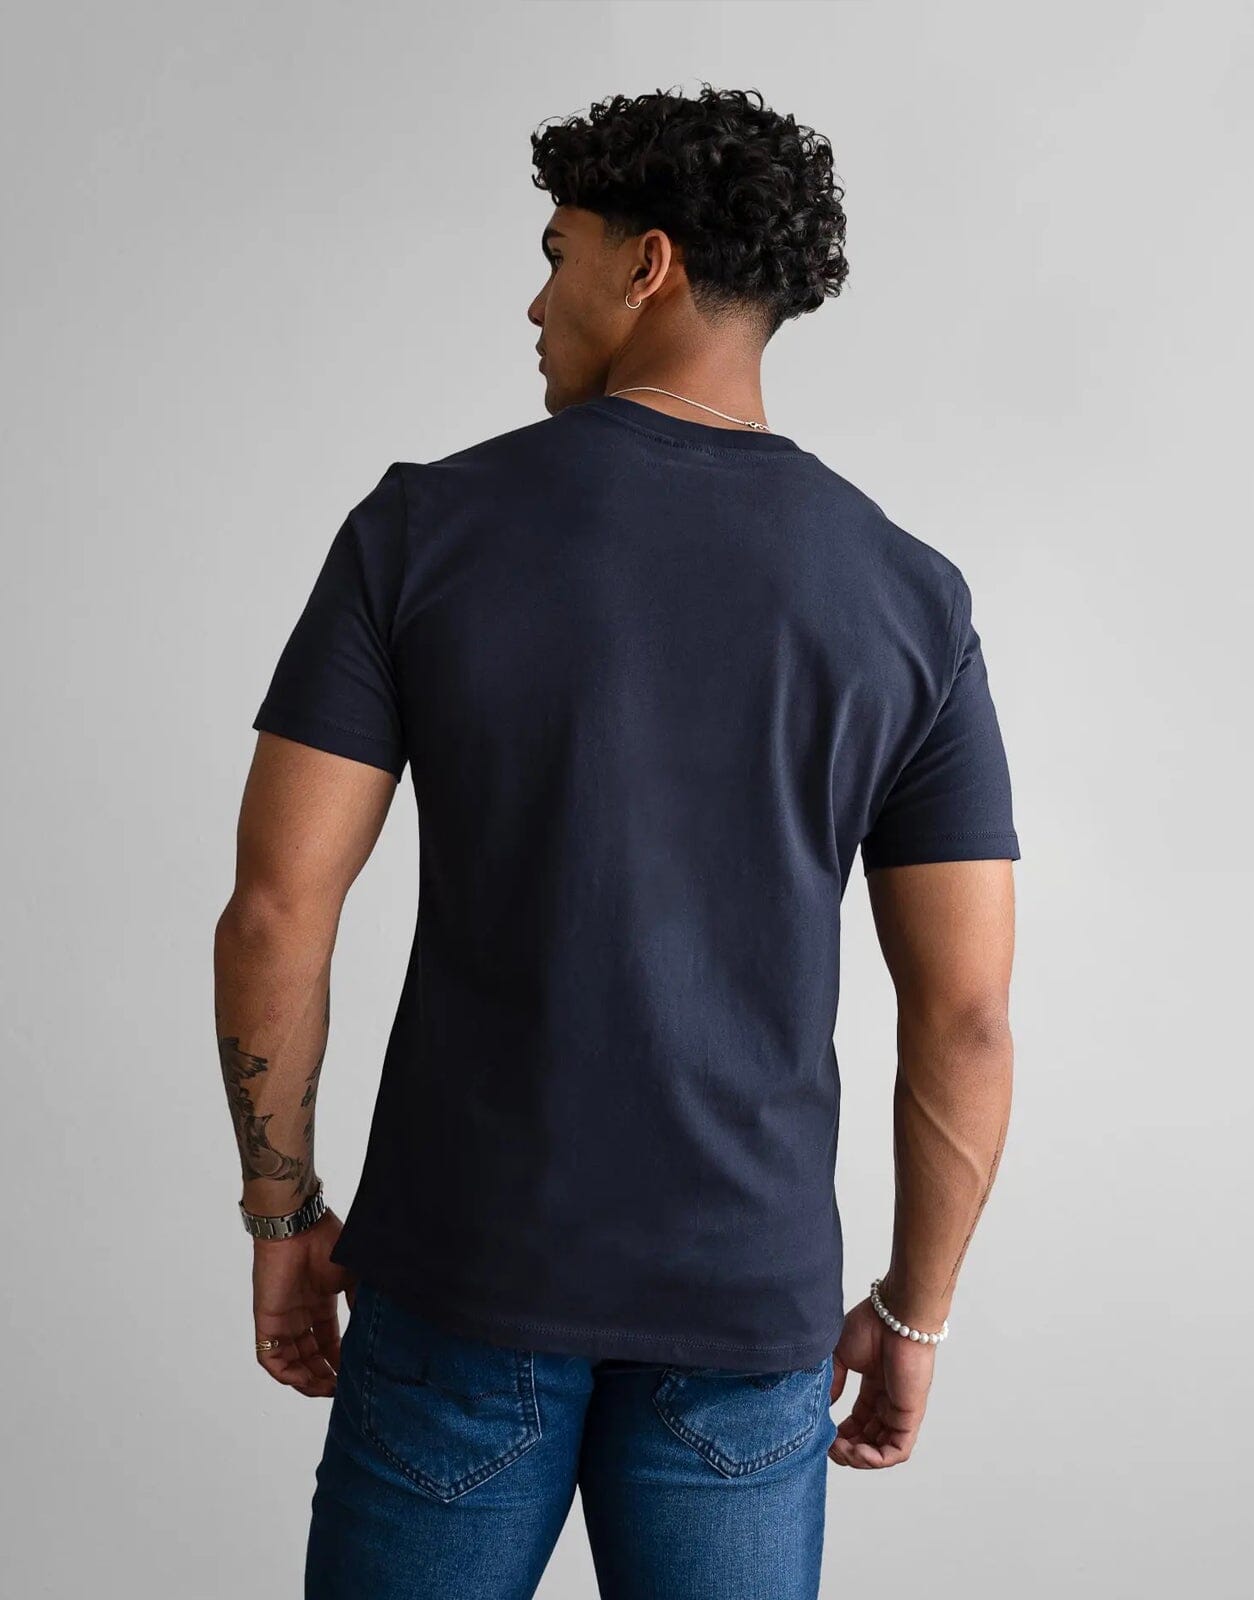 Fade Essential V-Neck Navy T-Shirt - Subwear